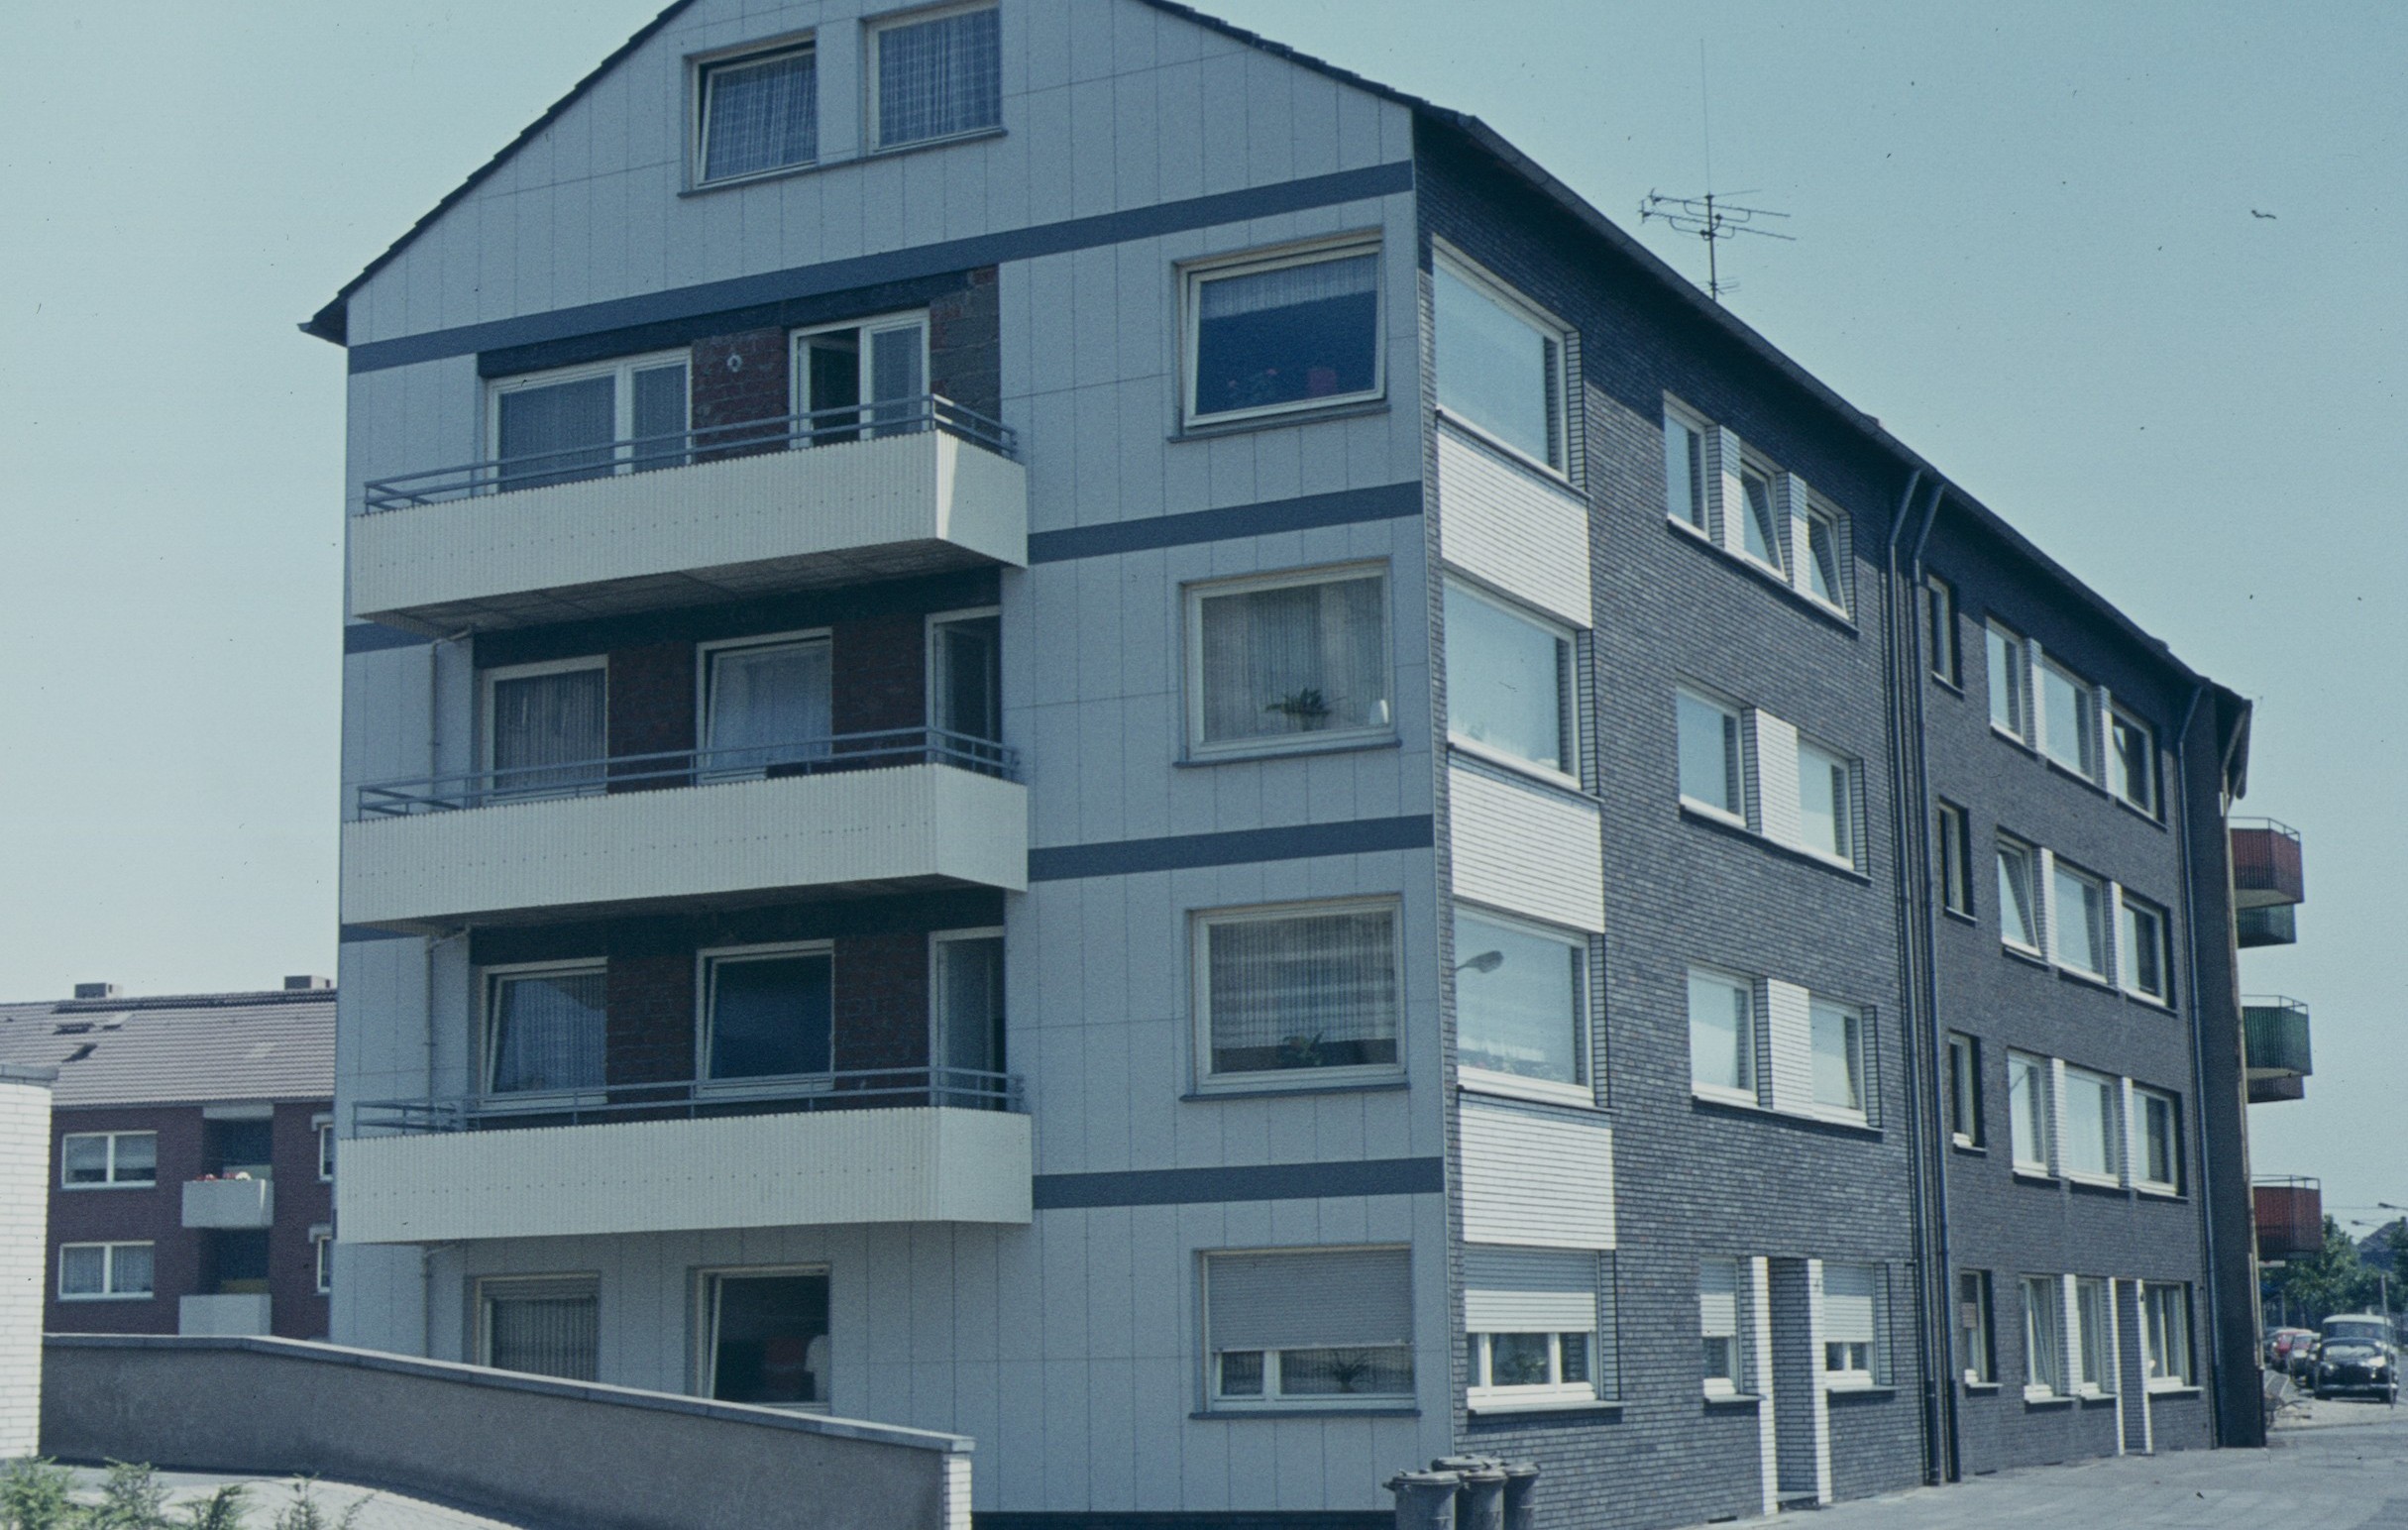 Krausstraße 9 : Jahr: 1970